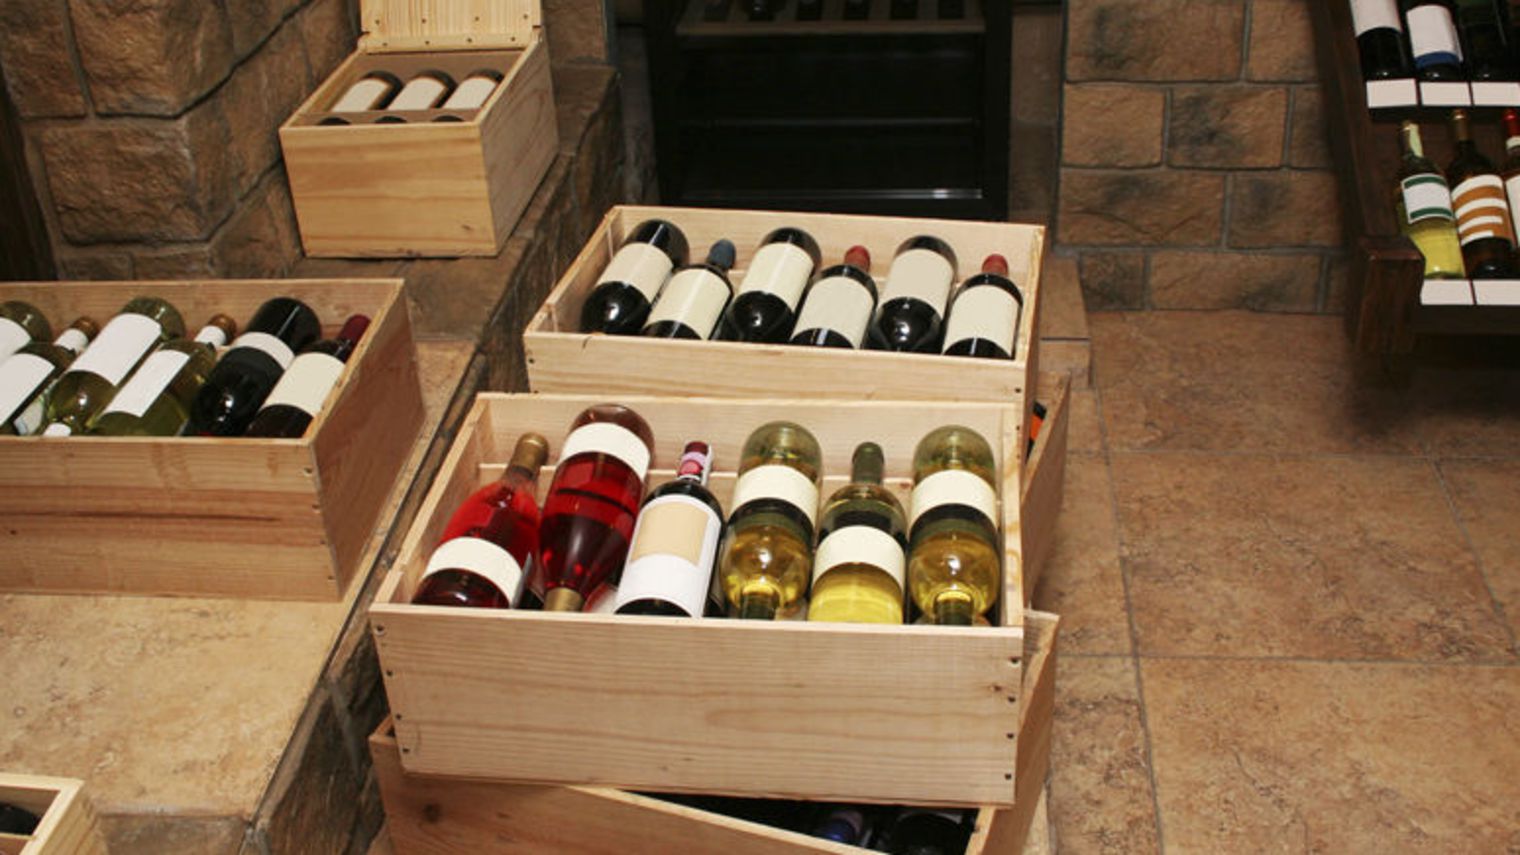 Des infos sur le vin et sur la méthode pour en acheter : achat-vin.fr